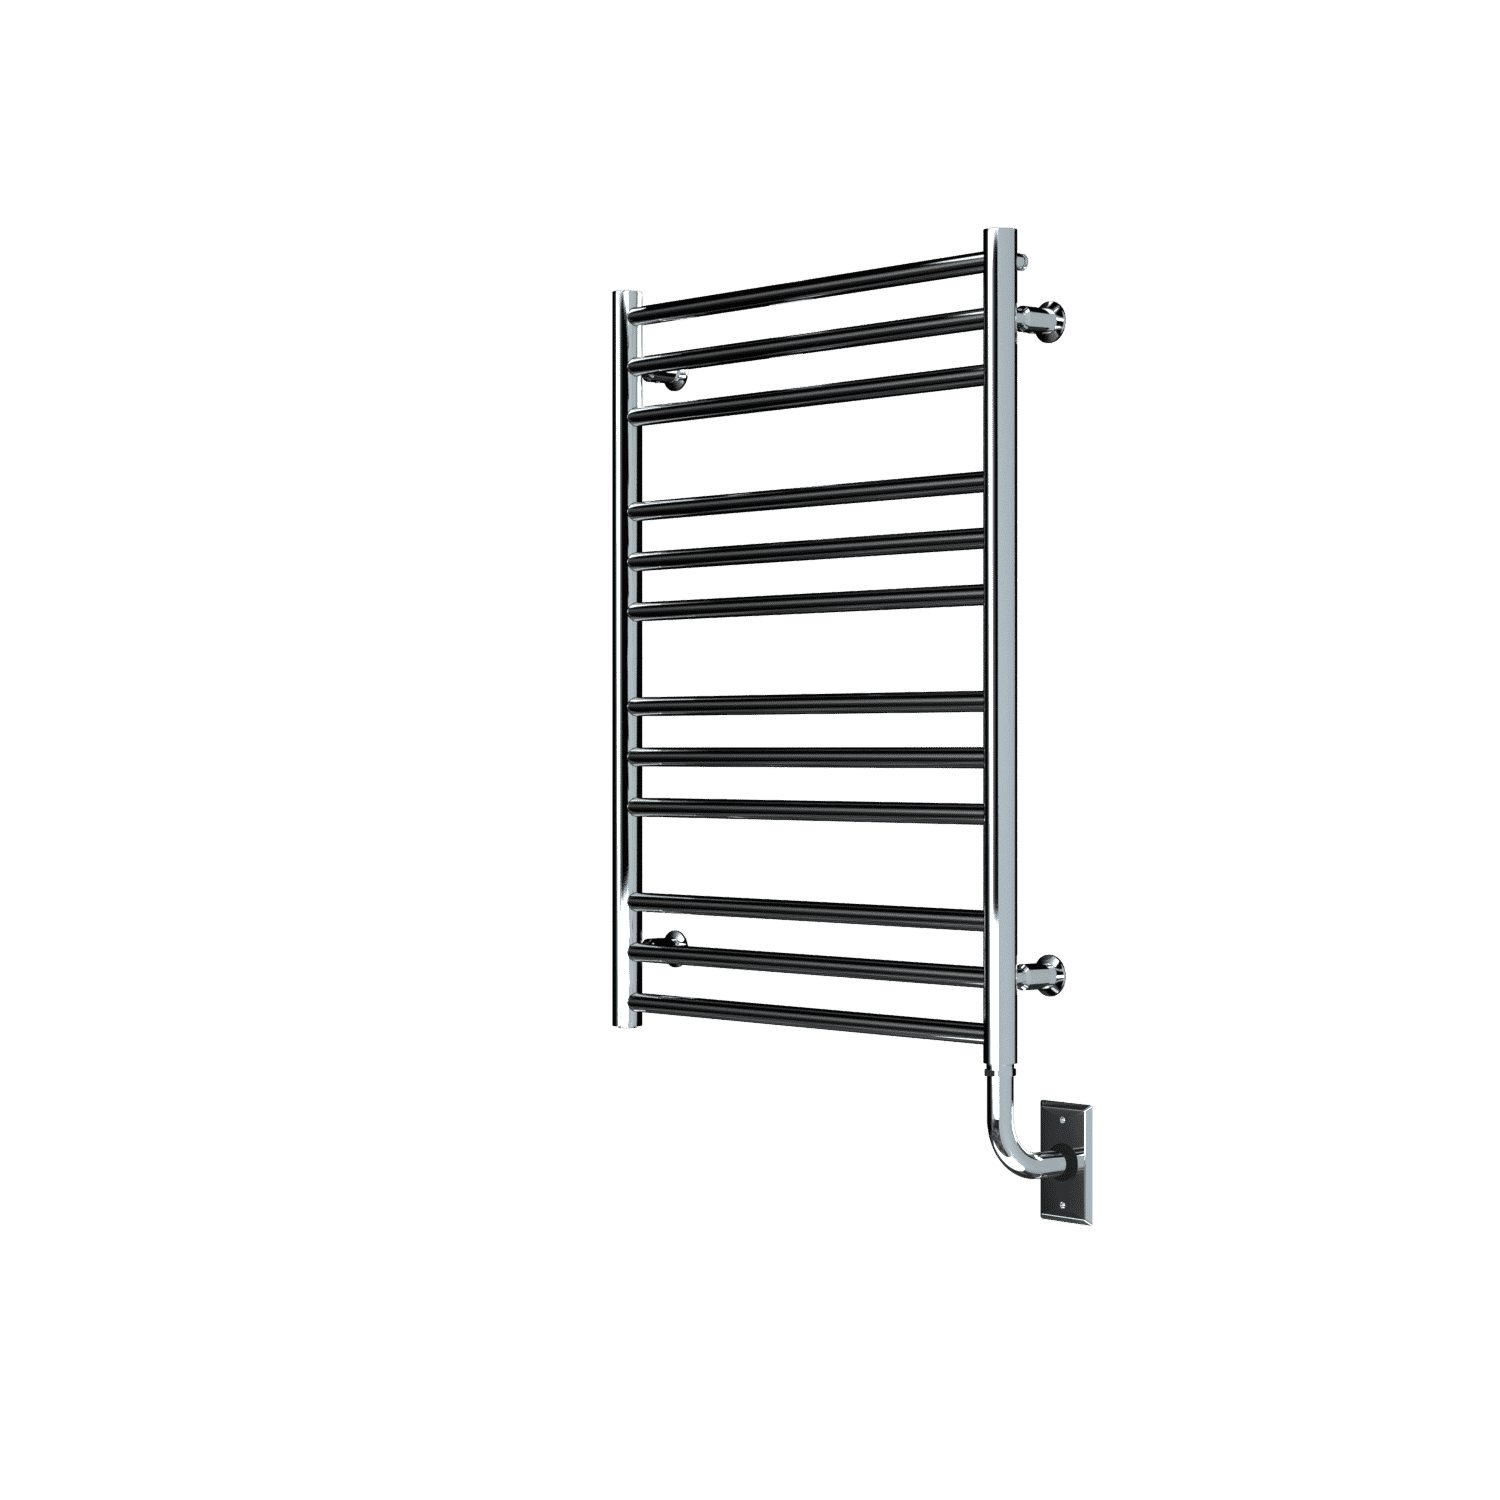 Tuzio Sorano Hardwired or plug in Towel Warmer - 23.5"w x 31"h - towelwarmers